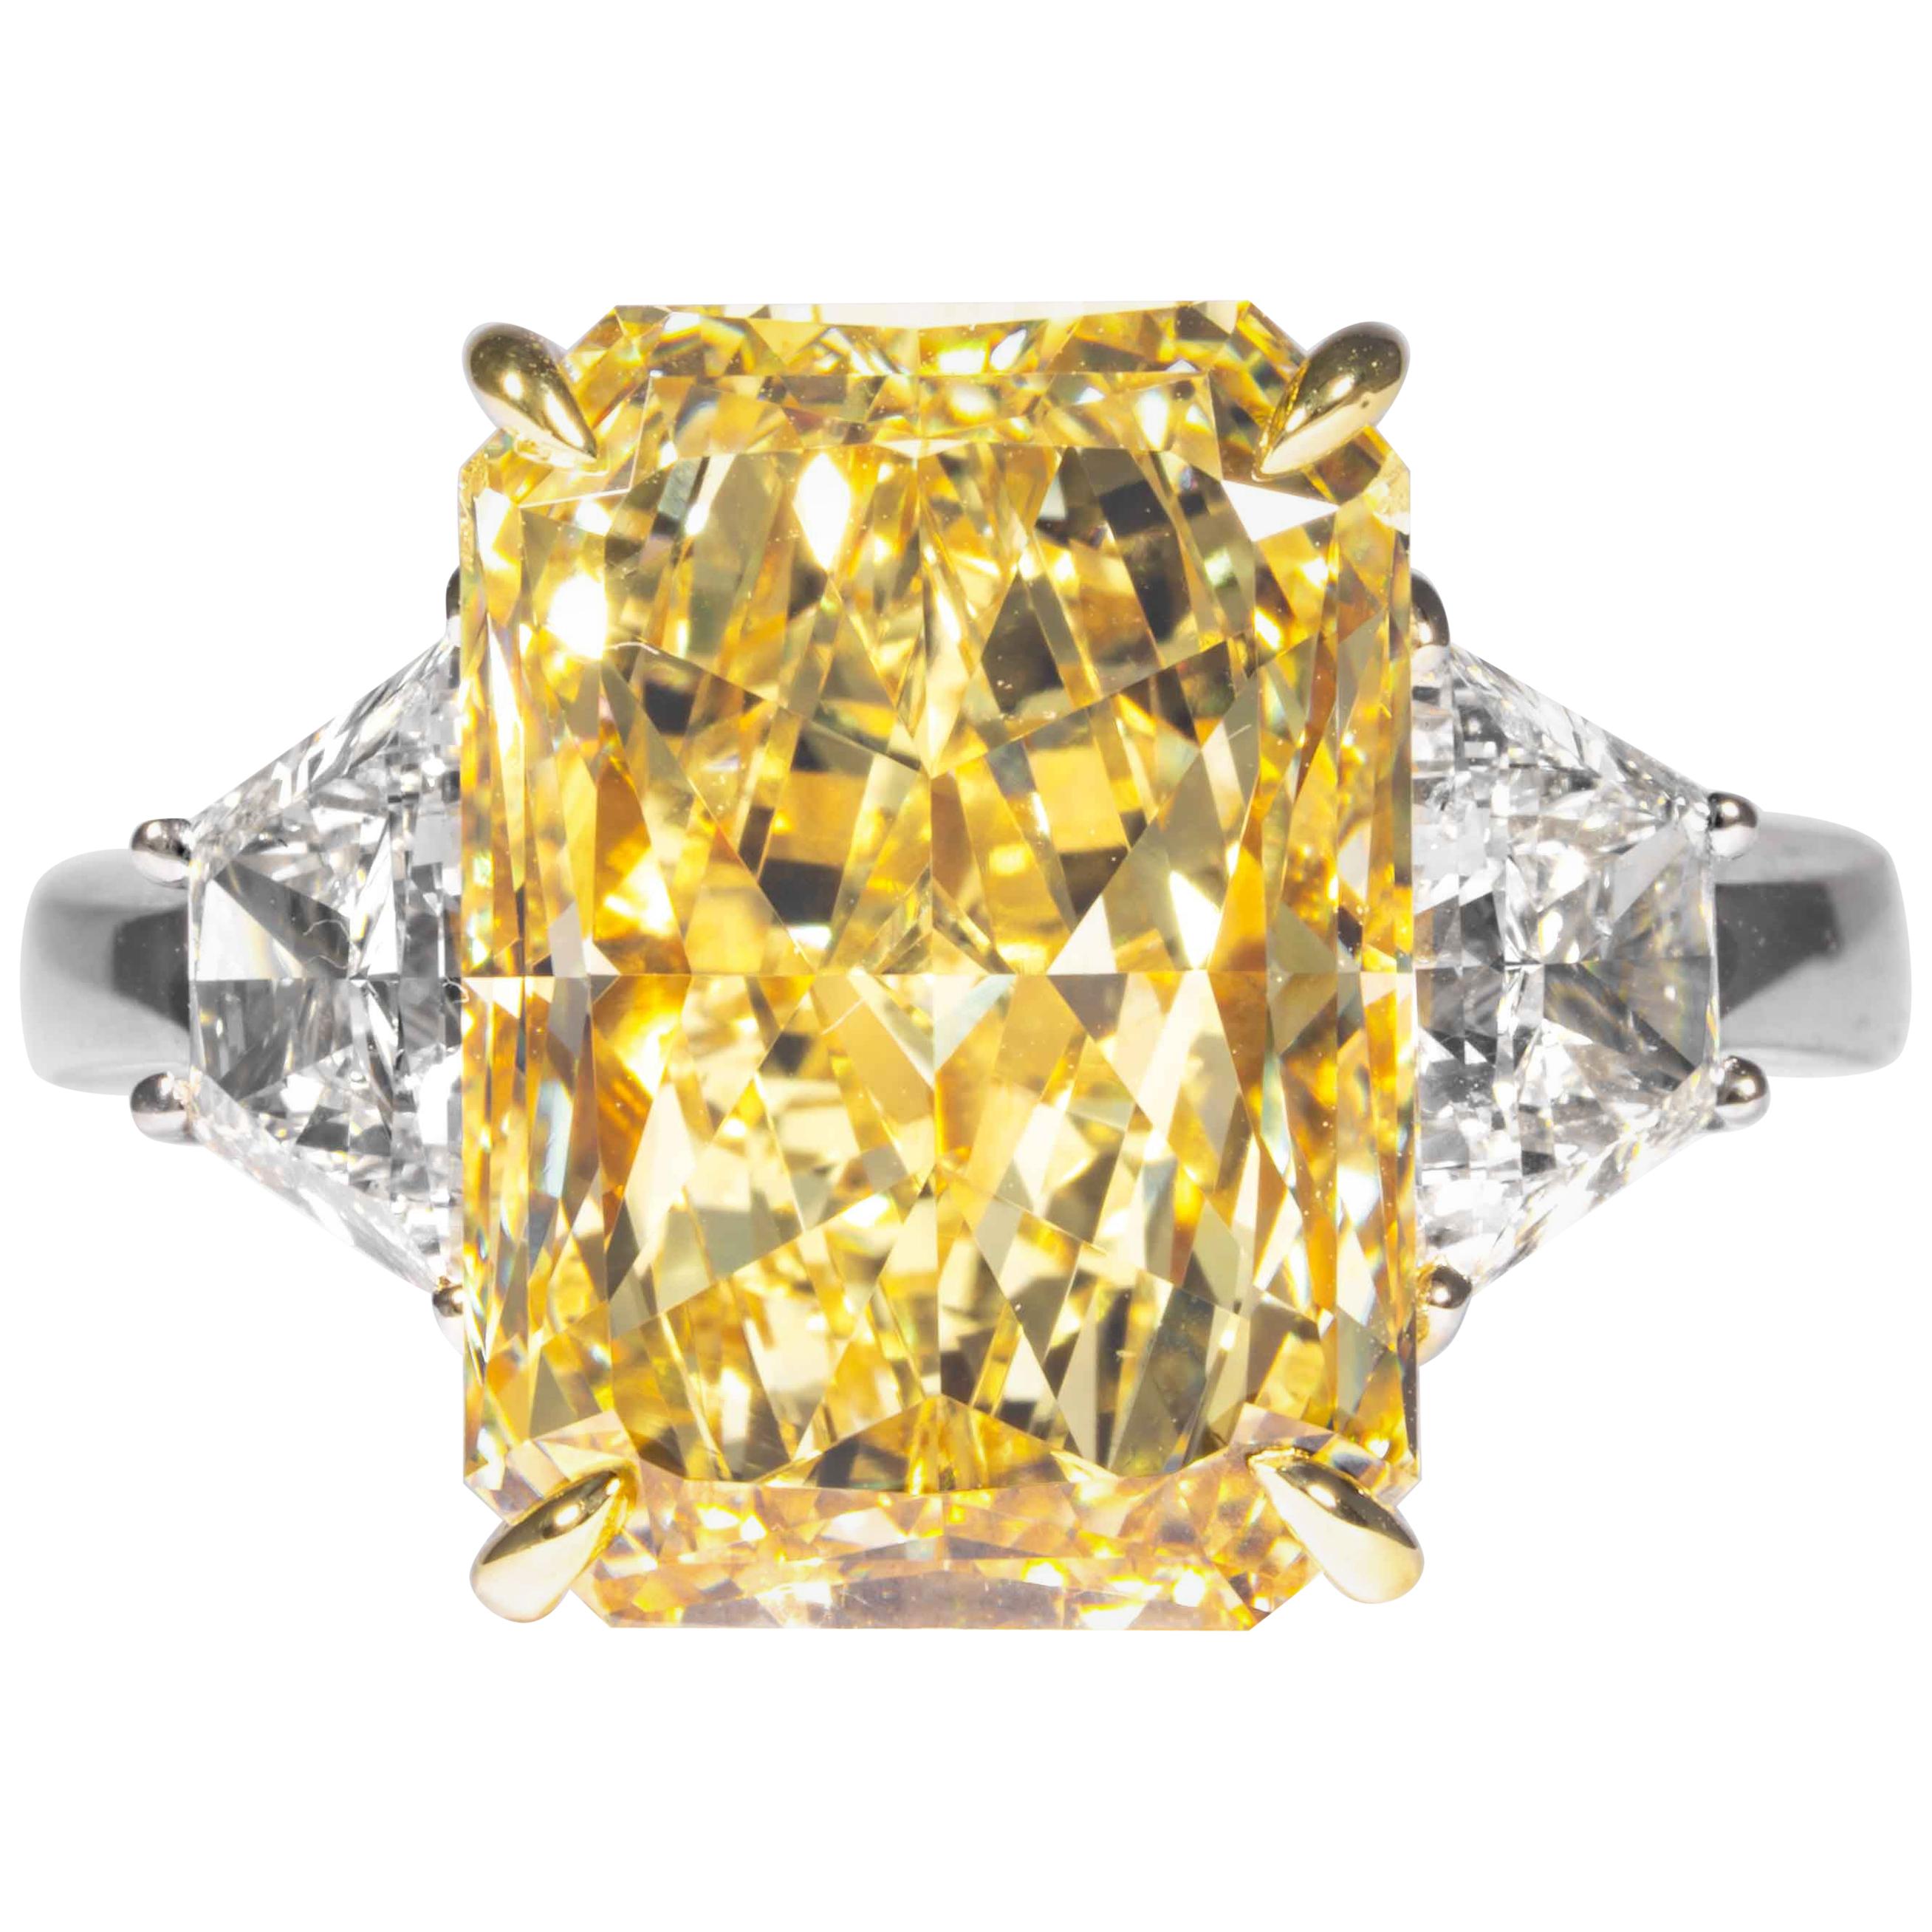 Shreve, Crump & Low GIA zertifiziert 7,95 Karat Ausgefallener gelber strahlender Diamantring